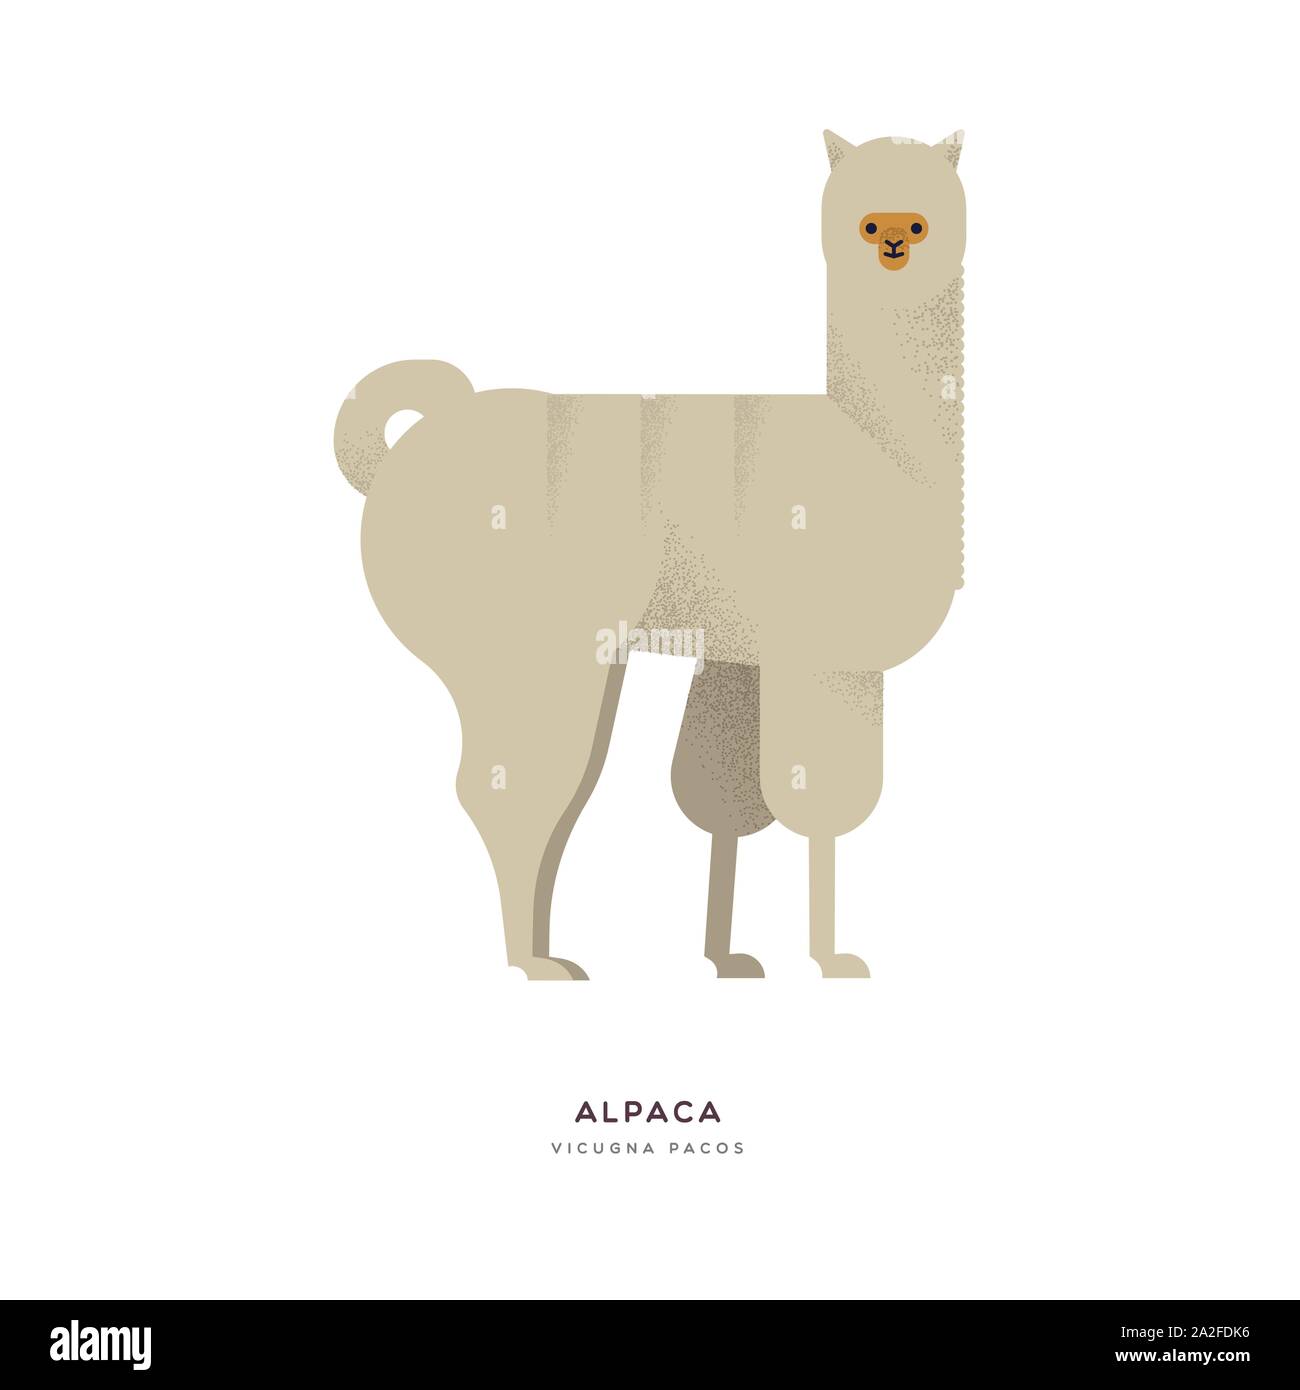 Illustrazione di Alpaca isolato su sfondo bianco, sud america animale da azienda concept. Istruzione di progettazione della fauna selvatica con specie di fauna nome etichetta. Illustrazione Vettoriale